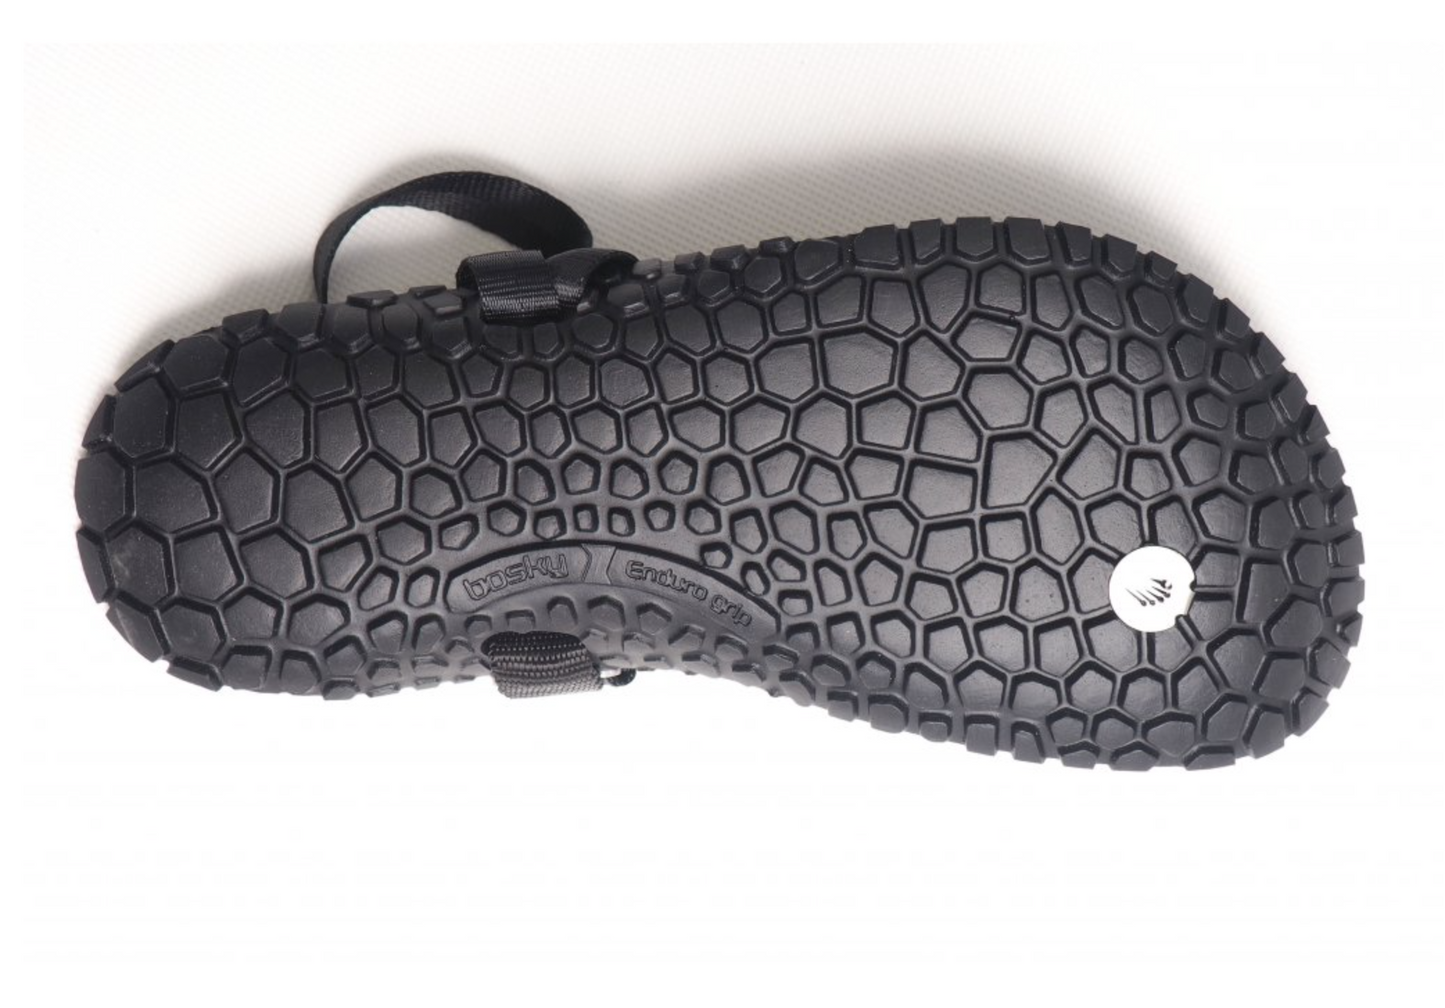 Bosky Enduro 2.0 Y Slim barfods sandaler til kvinder og mænd i farven black, saal